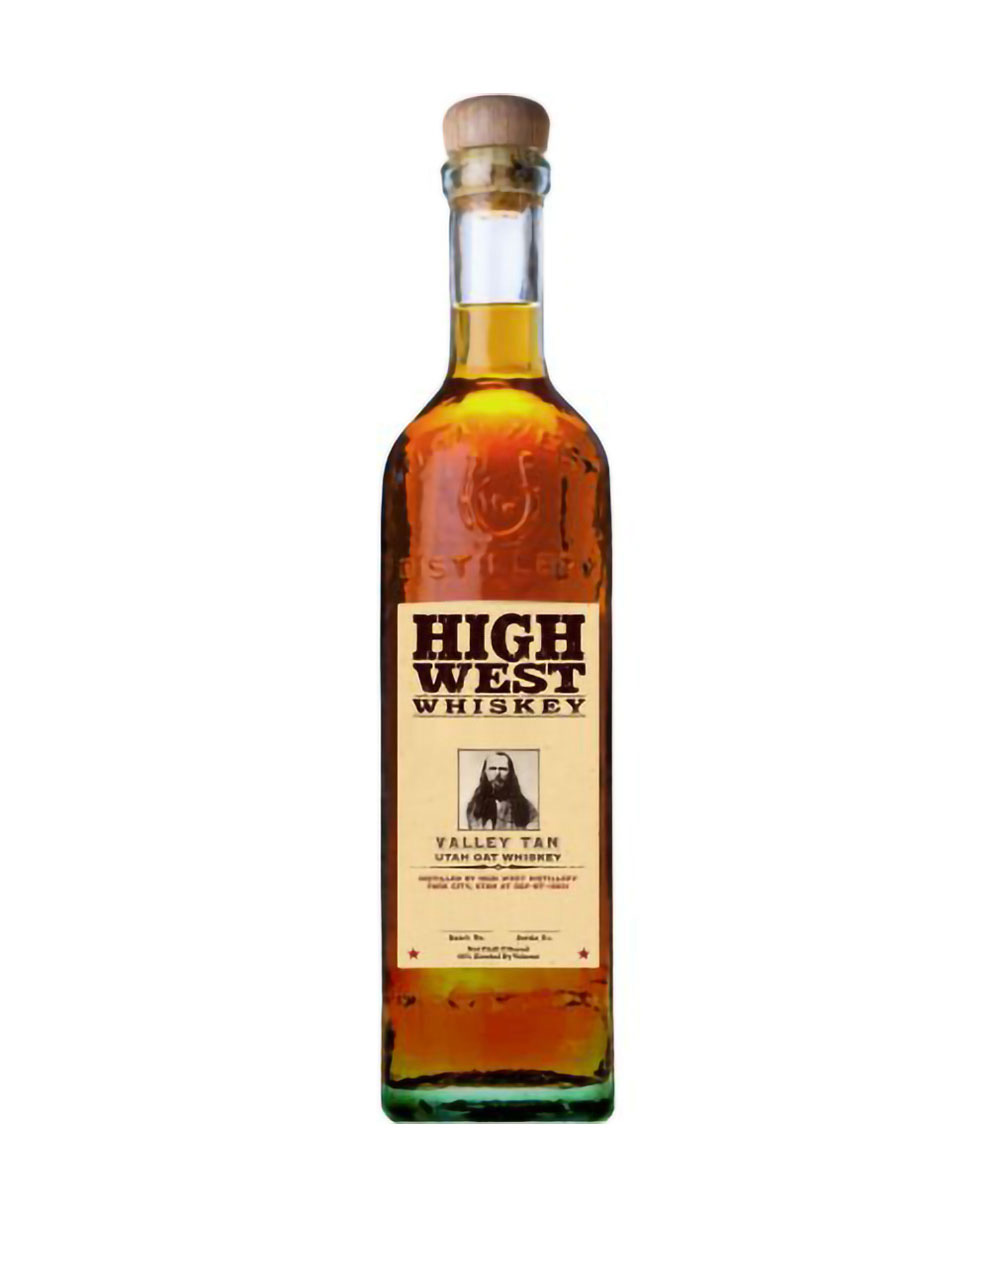 High West Valley Tan Utah Oat Whiskey